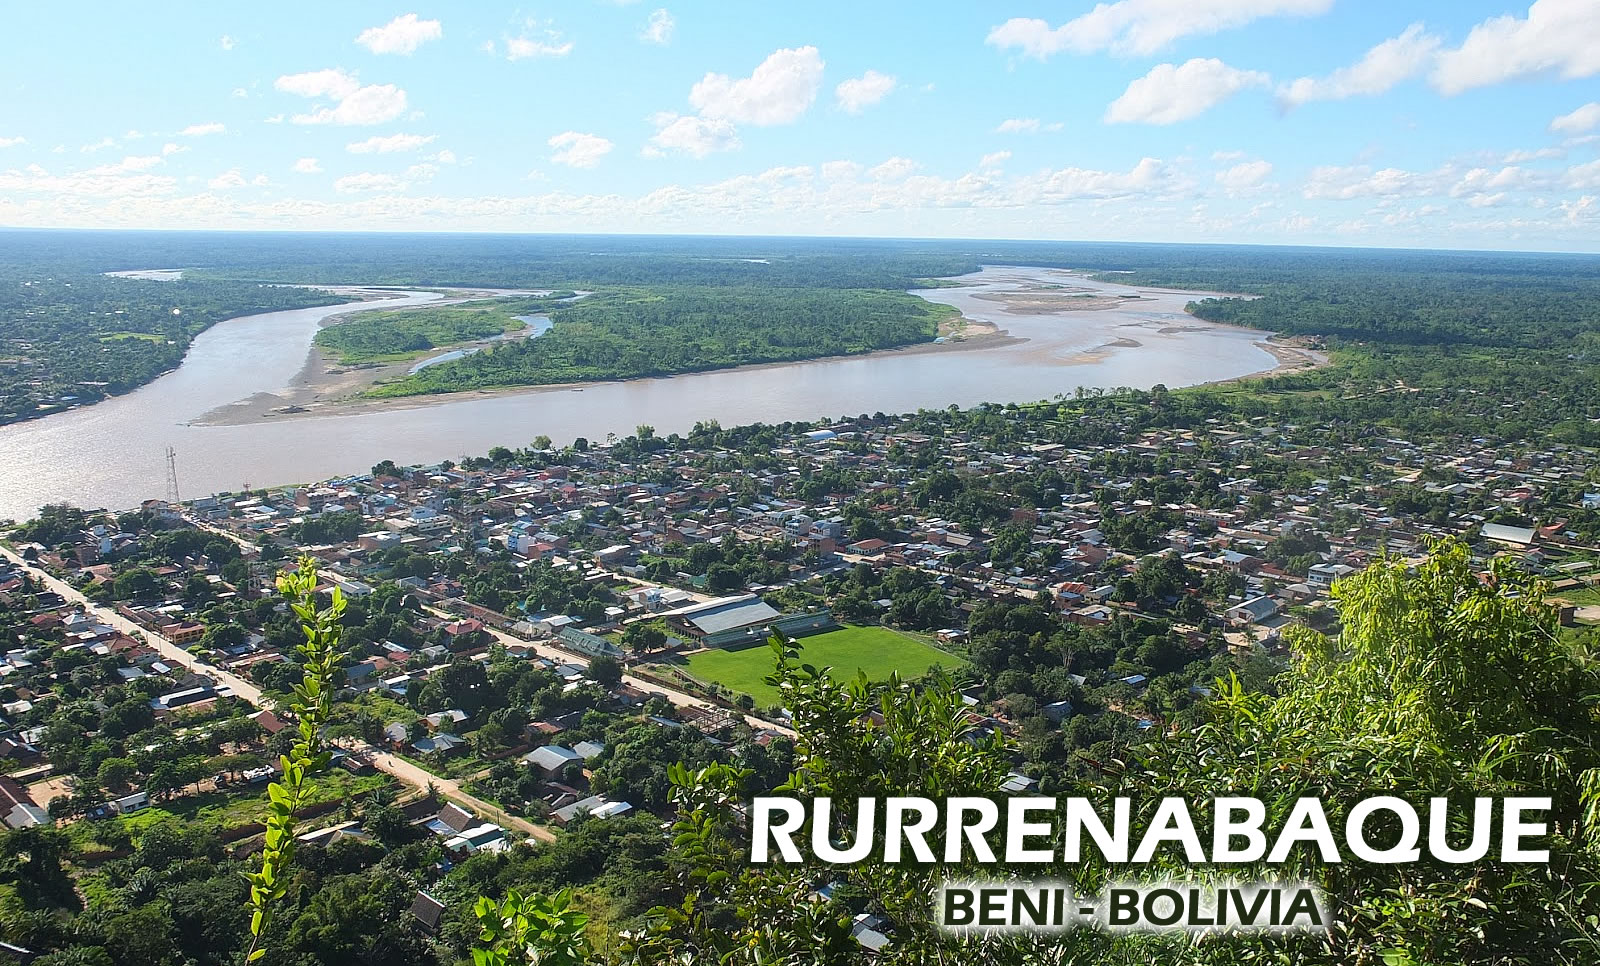 Rurrenabaque, Beni - Bolivia; destino actualmente impulsado por el Ministerio de Culturas y Turismo.